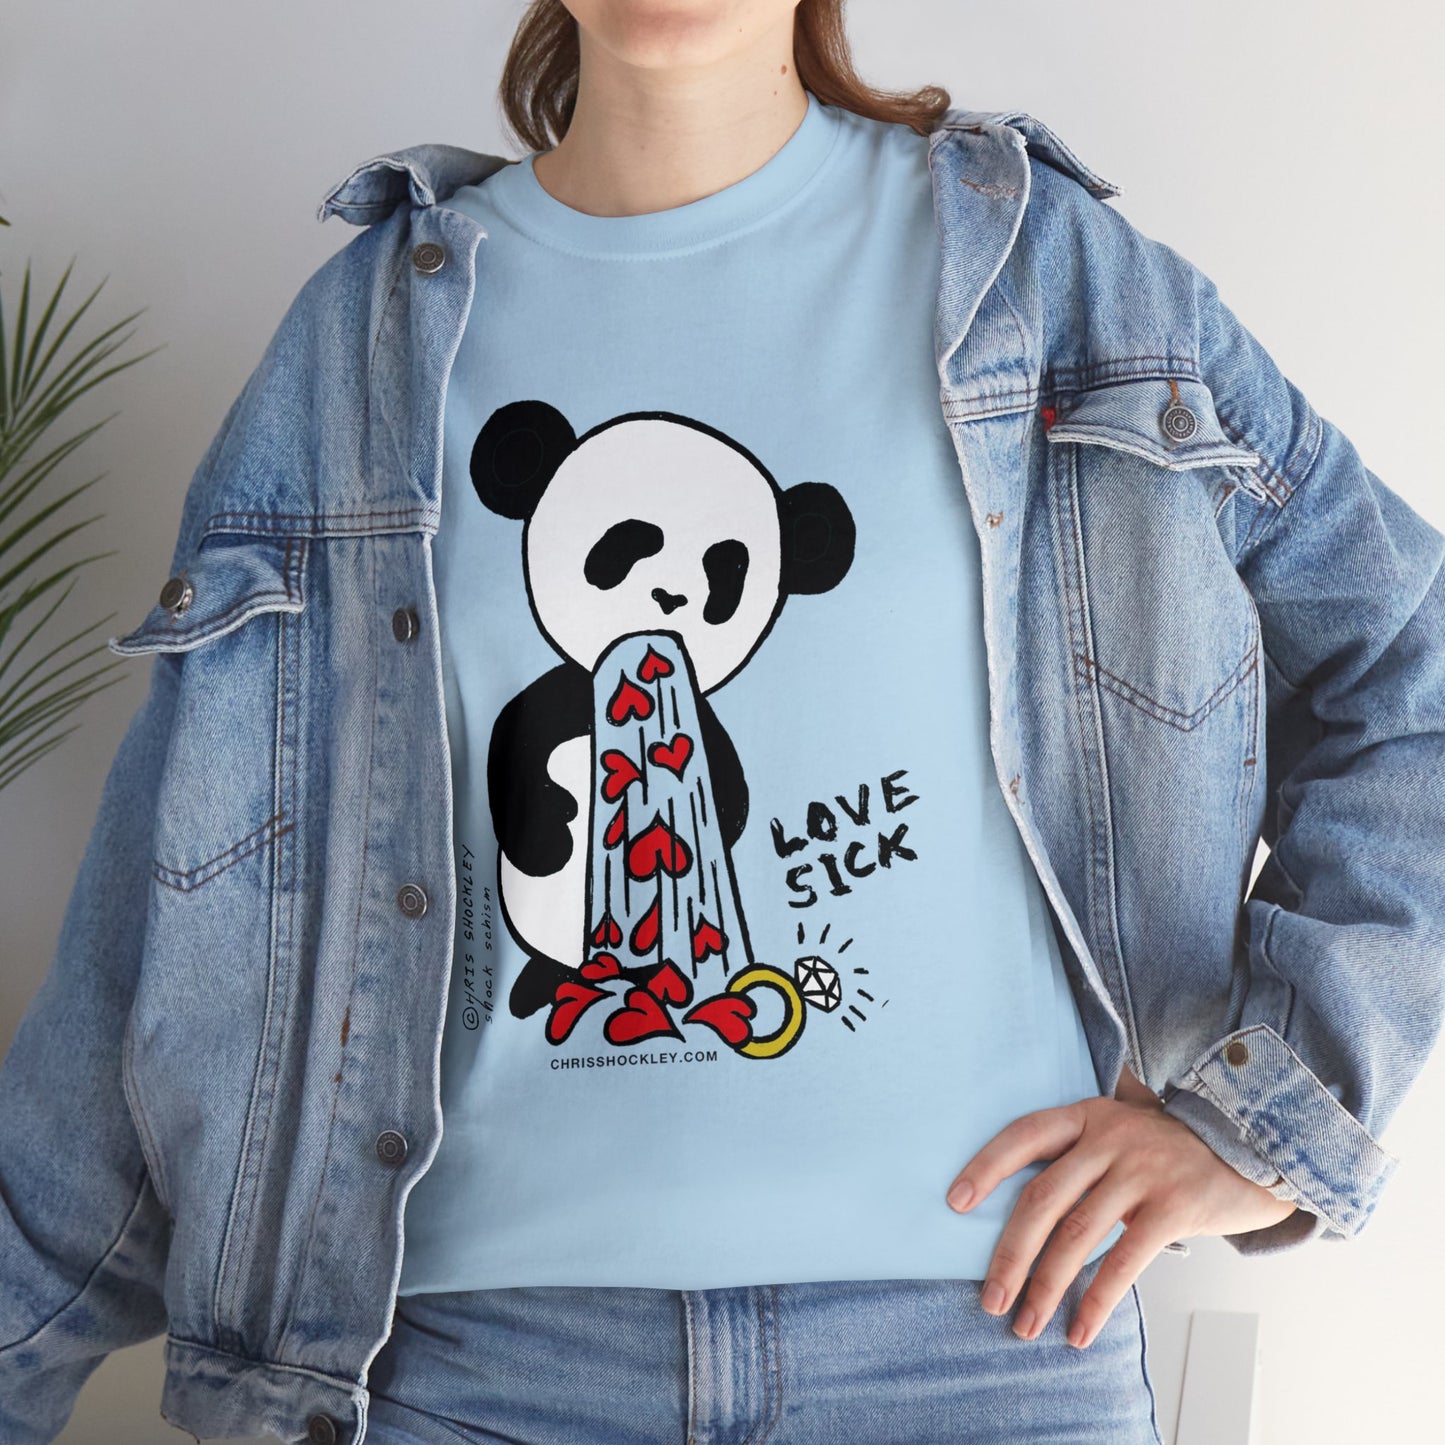 Love Sick Panda - Unisex Heavy Cotton Tee